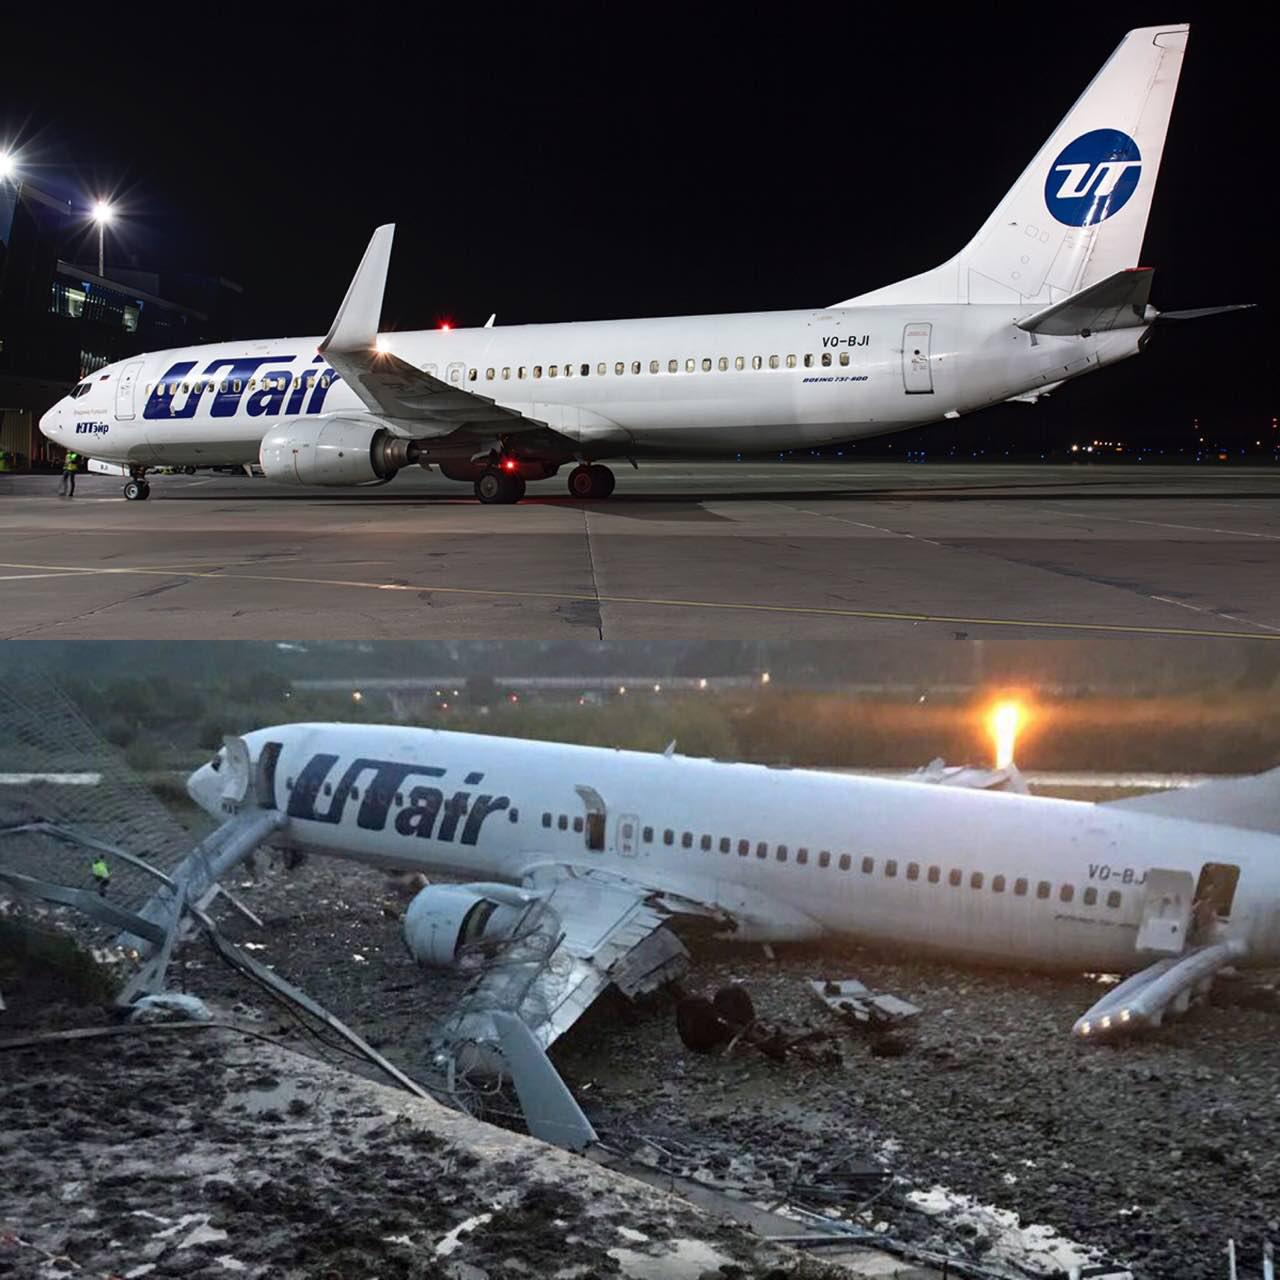 У ніч на суботу, 1 вересня 2018 року, в аеропорту Сочі літак Boeing 737-800 російської а / к UTair, який прямував рейсом UT579 Москва - Сочі, після посадки викотився за межі ЗПС, скотився в русло річки і загорівся